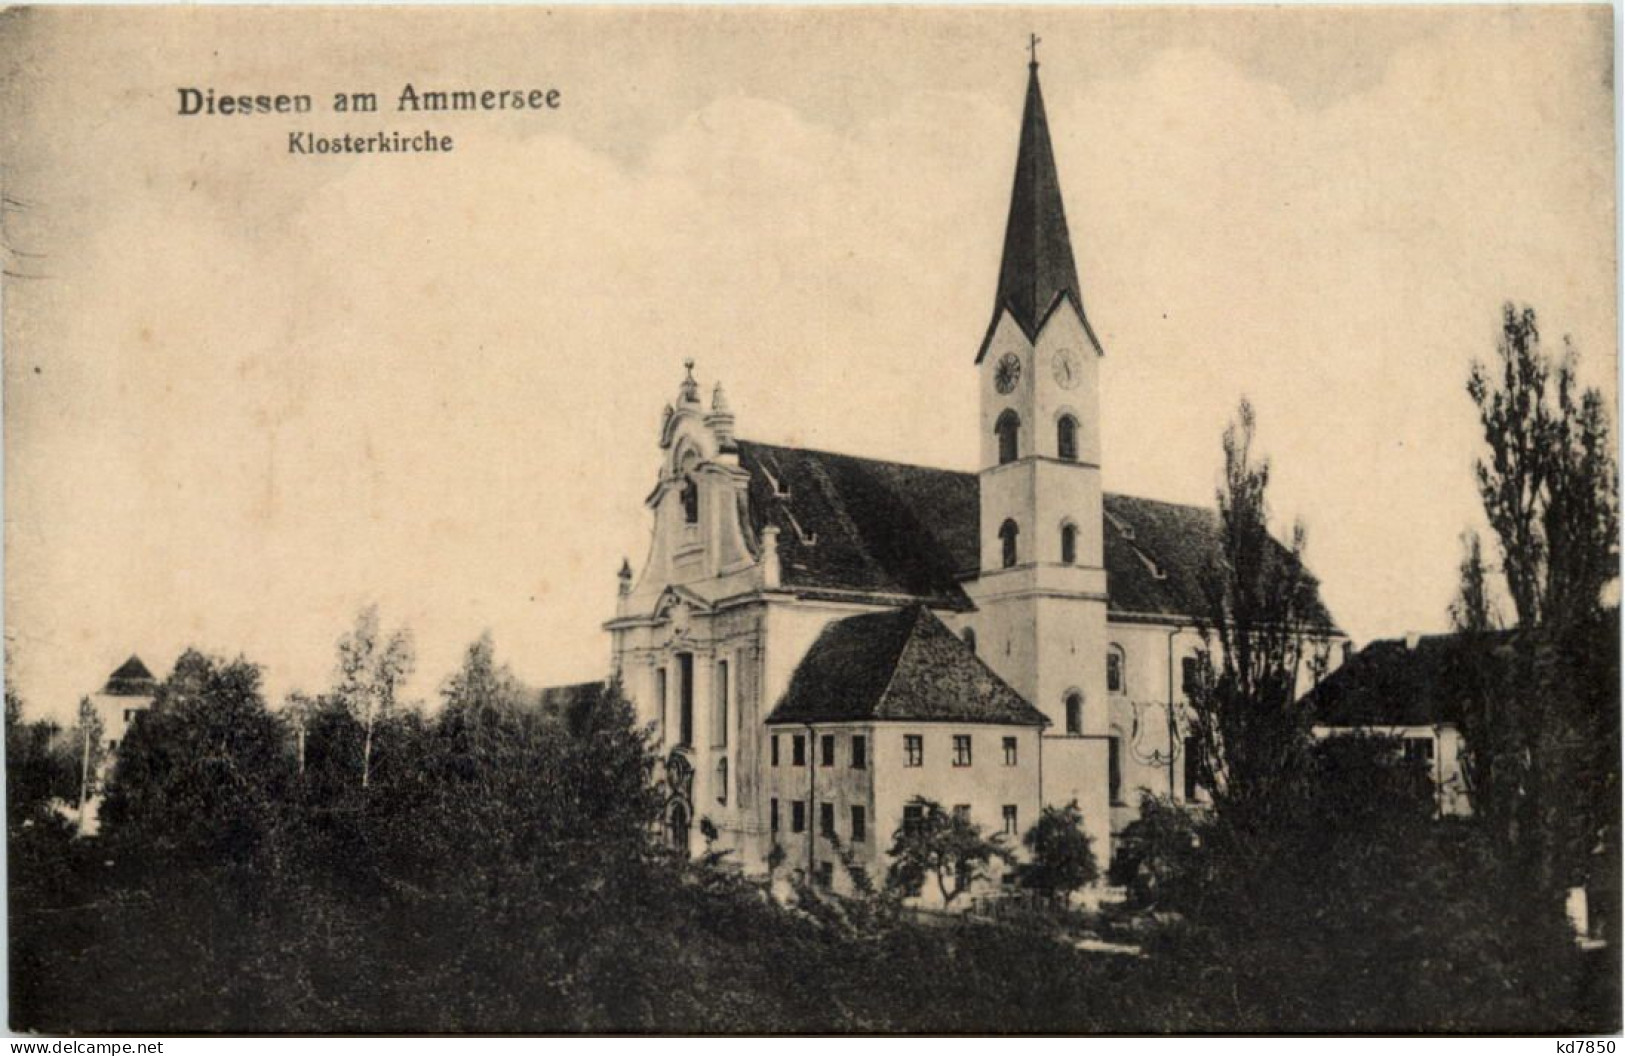 Am Ammersee, Diessen, Klosterkirche - Diessen